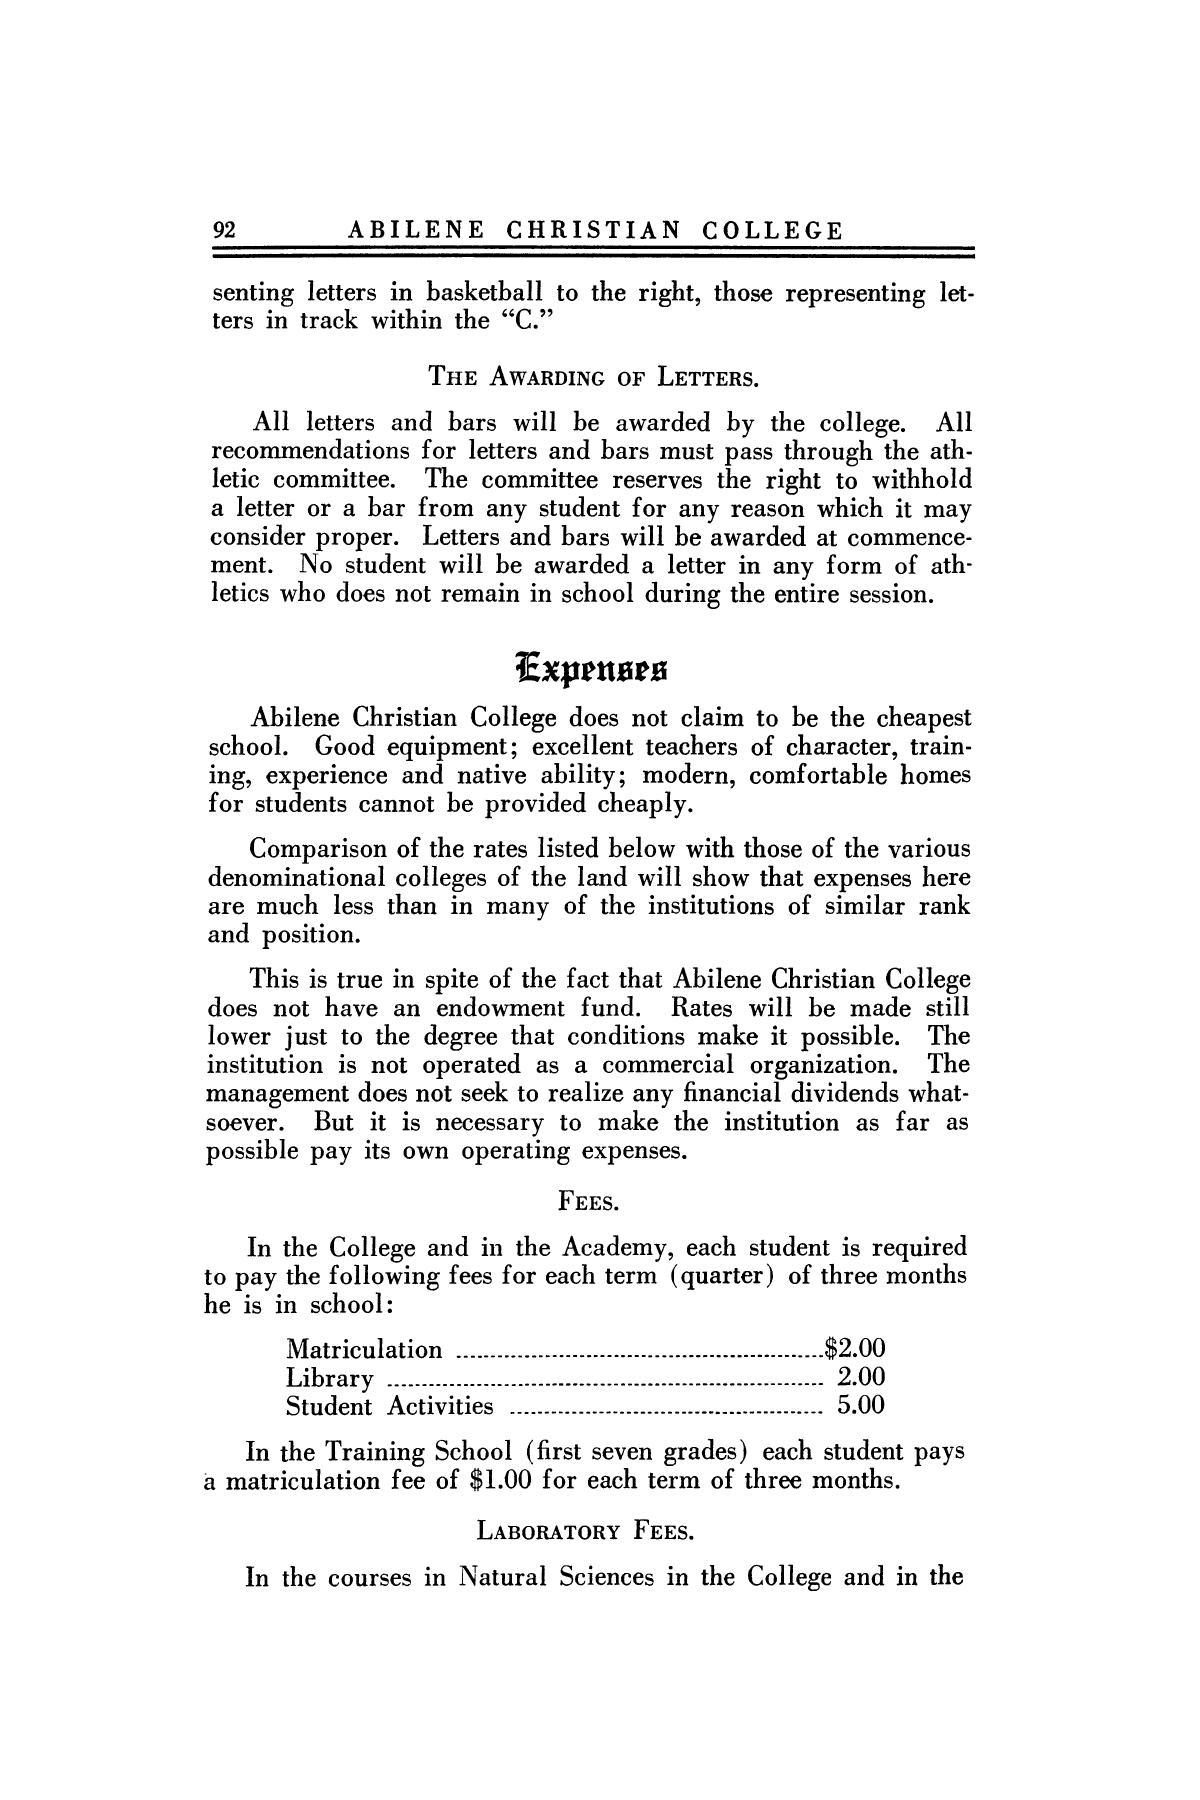 Catalog of Abilene Christian College, 1924-1925
                                                
                                                    92
                                                